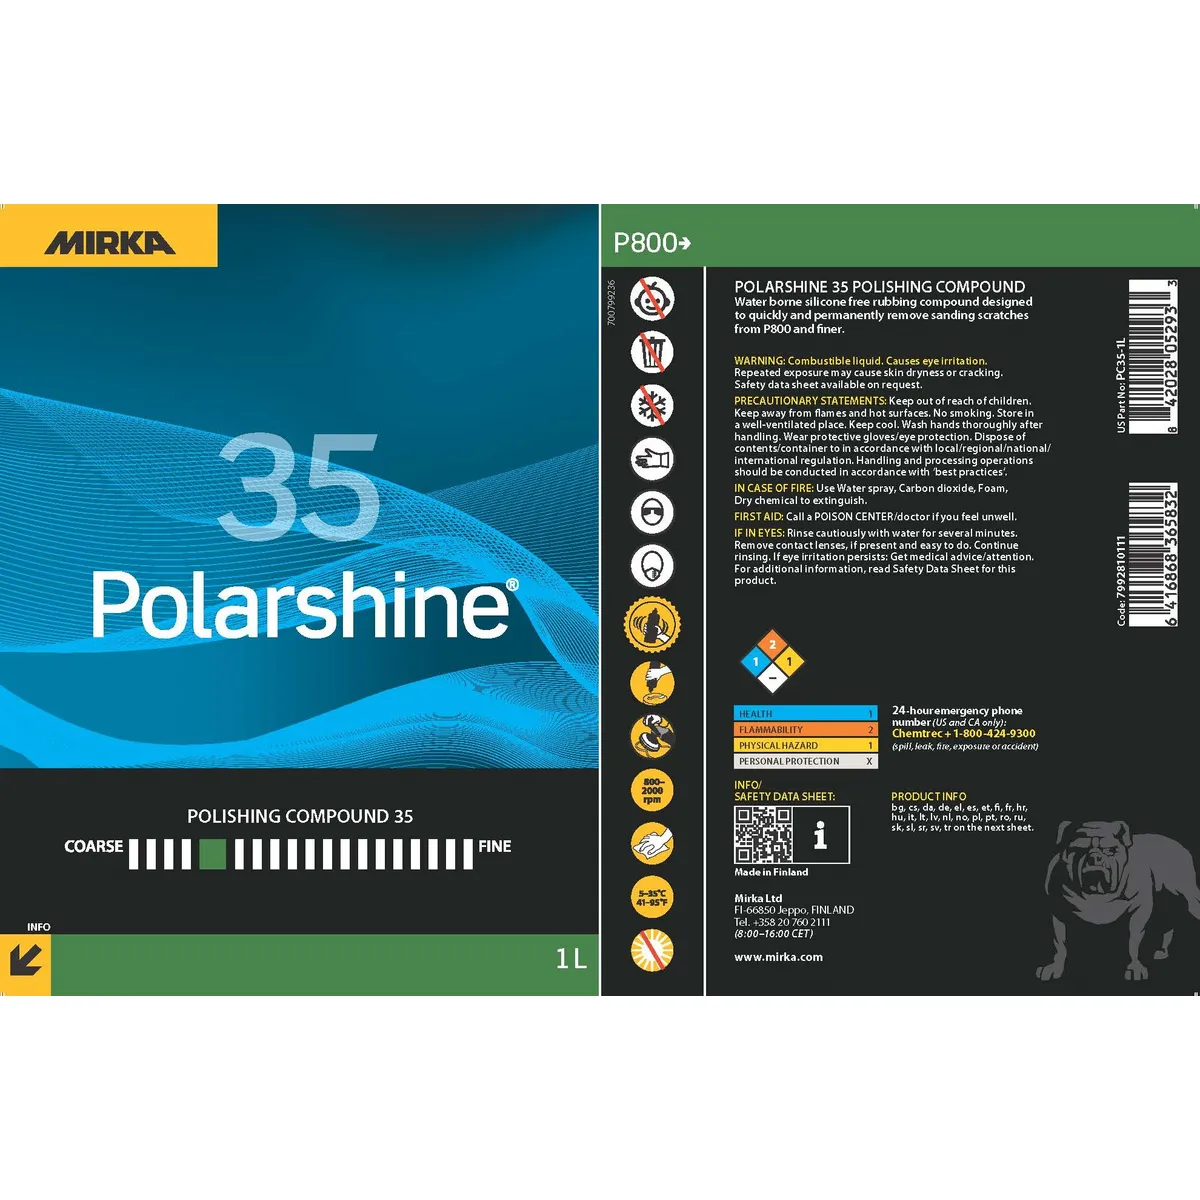 Pasta polish, Mirka Polarshine® 35 Polishing Compound, compus de lustruire grosier dezvoltat pentru aplicații industriale și marine solicitante, gramaj 1 litru [2]